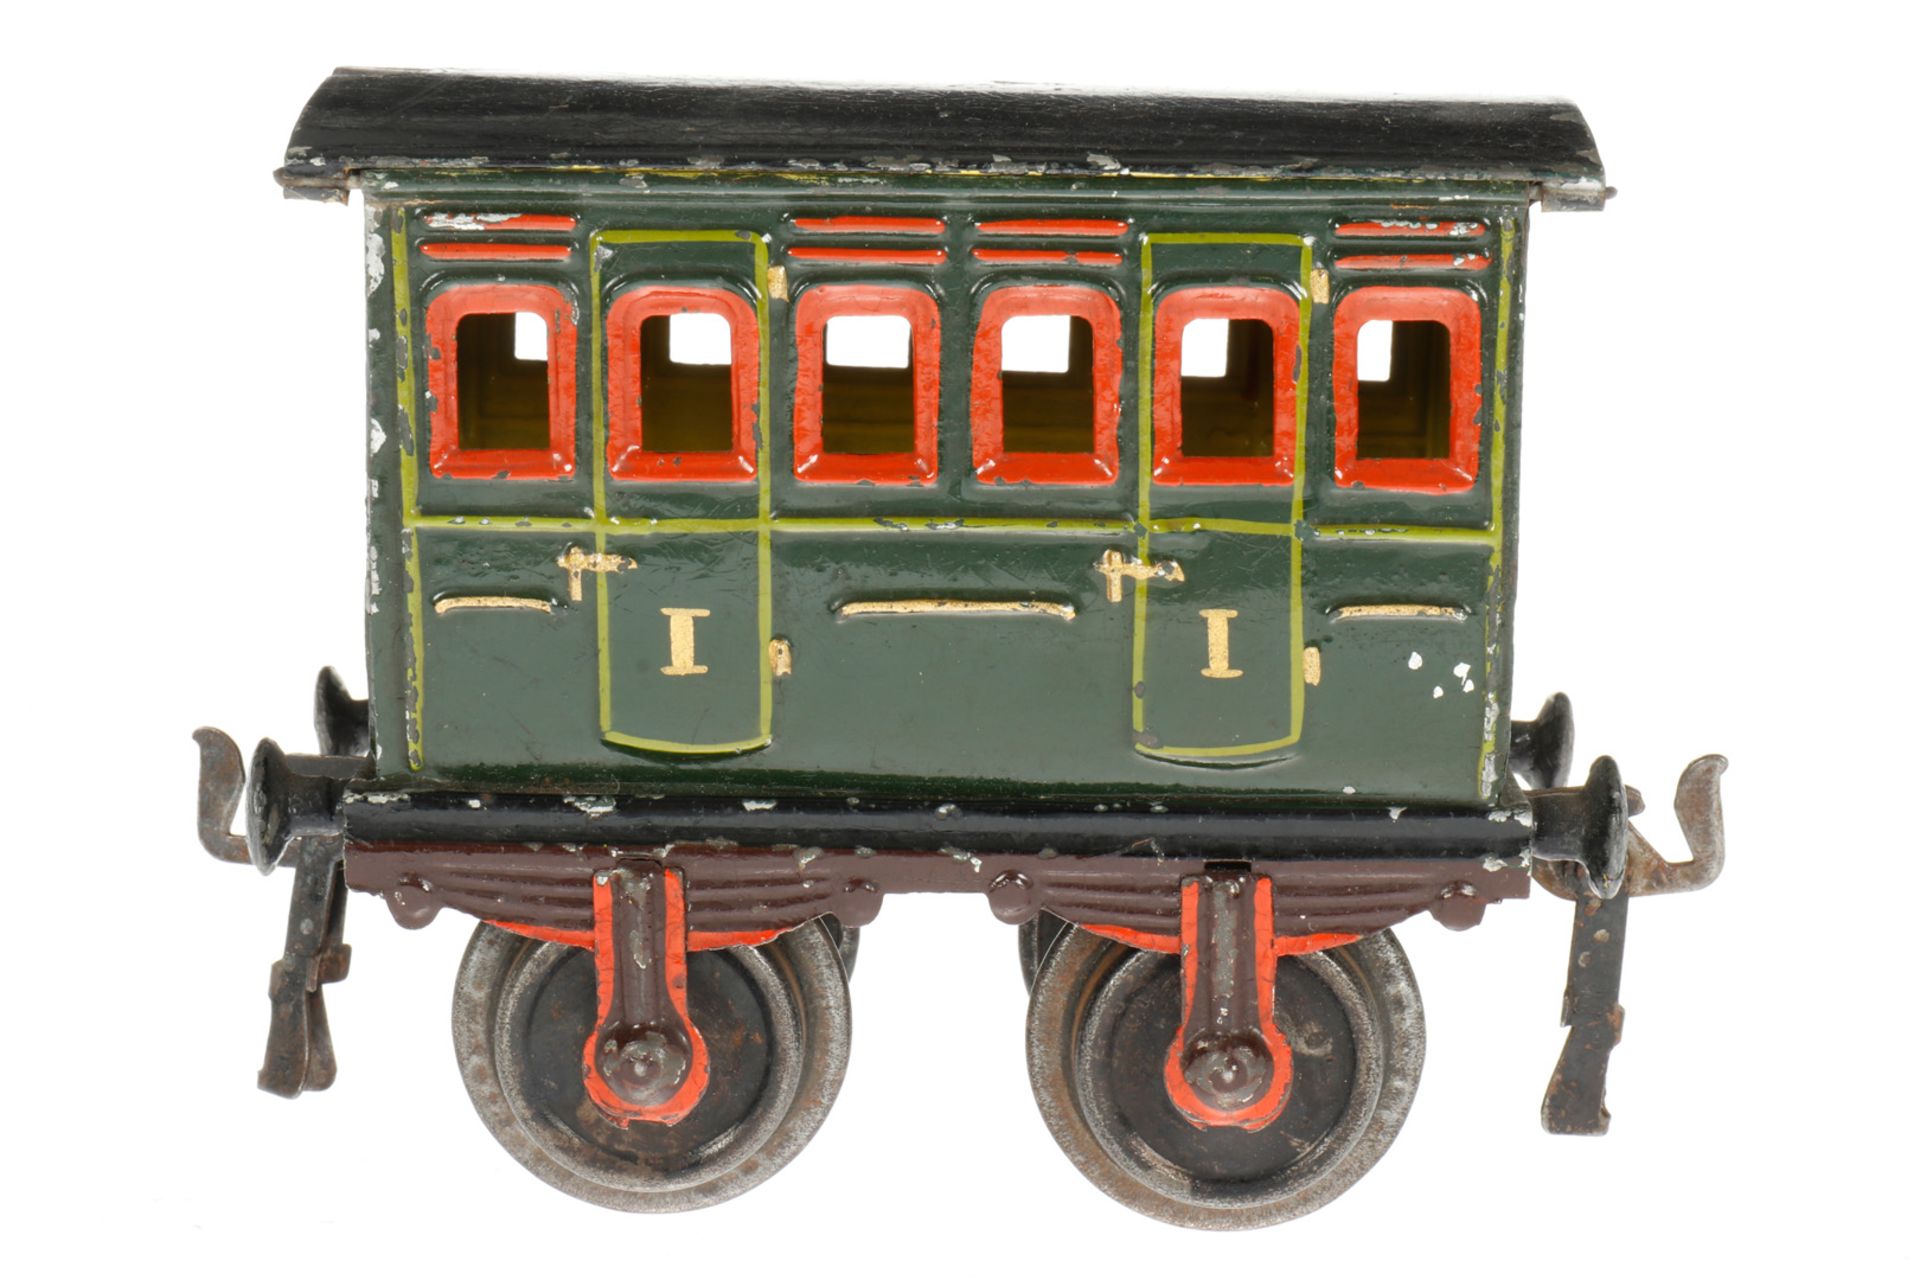 Märklin Abteilwagen 1855, S 1, uralt, grün, HL, LS und gealterter Lack, L 12,5, Z 2-3